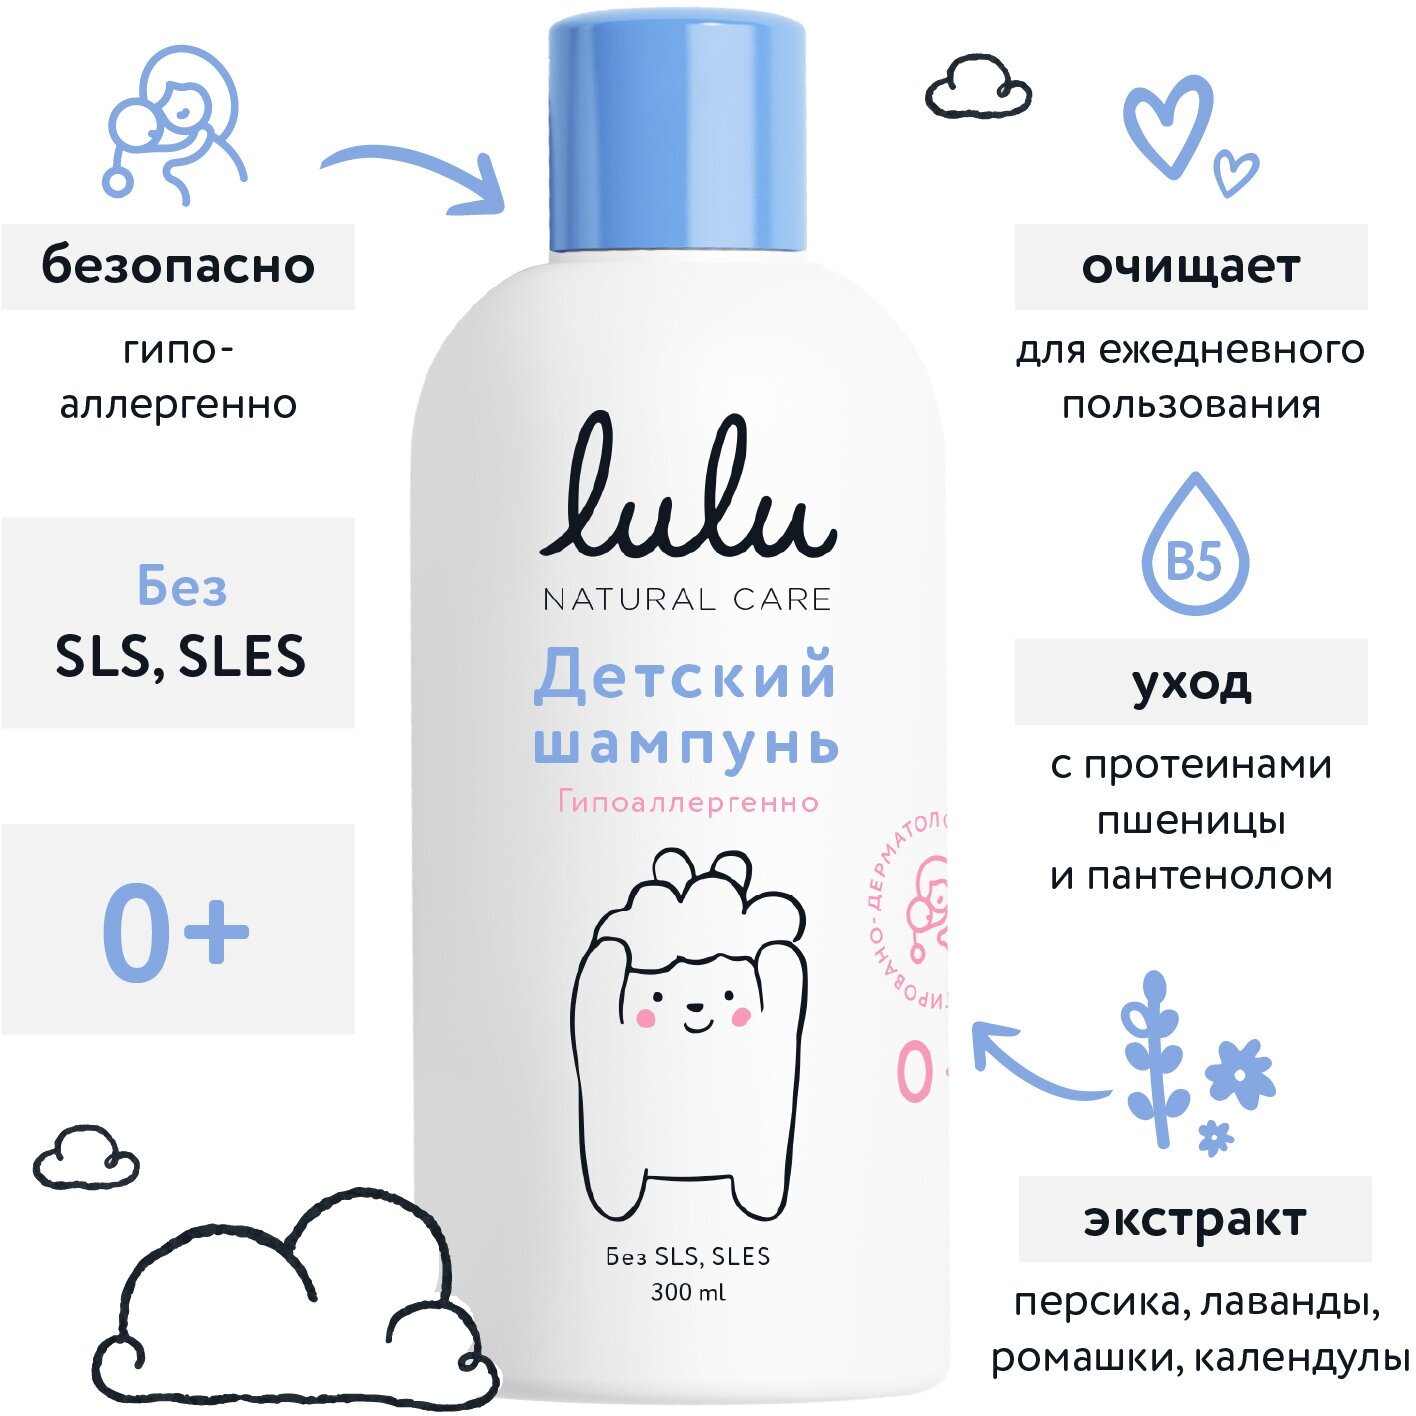 Детский шампунь Lulu для волос новорожденных, бессульфатный, 300 мл. Шампунь для купания детей натуральный, для девочек, мальчиков, 0+